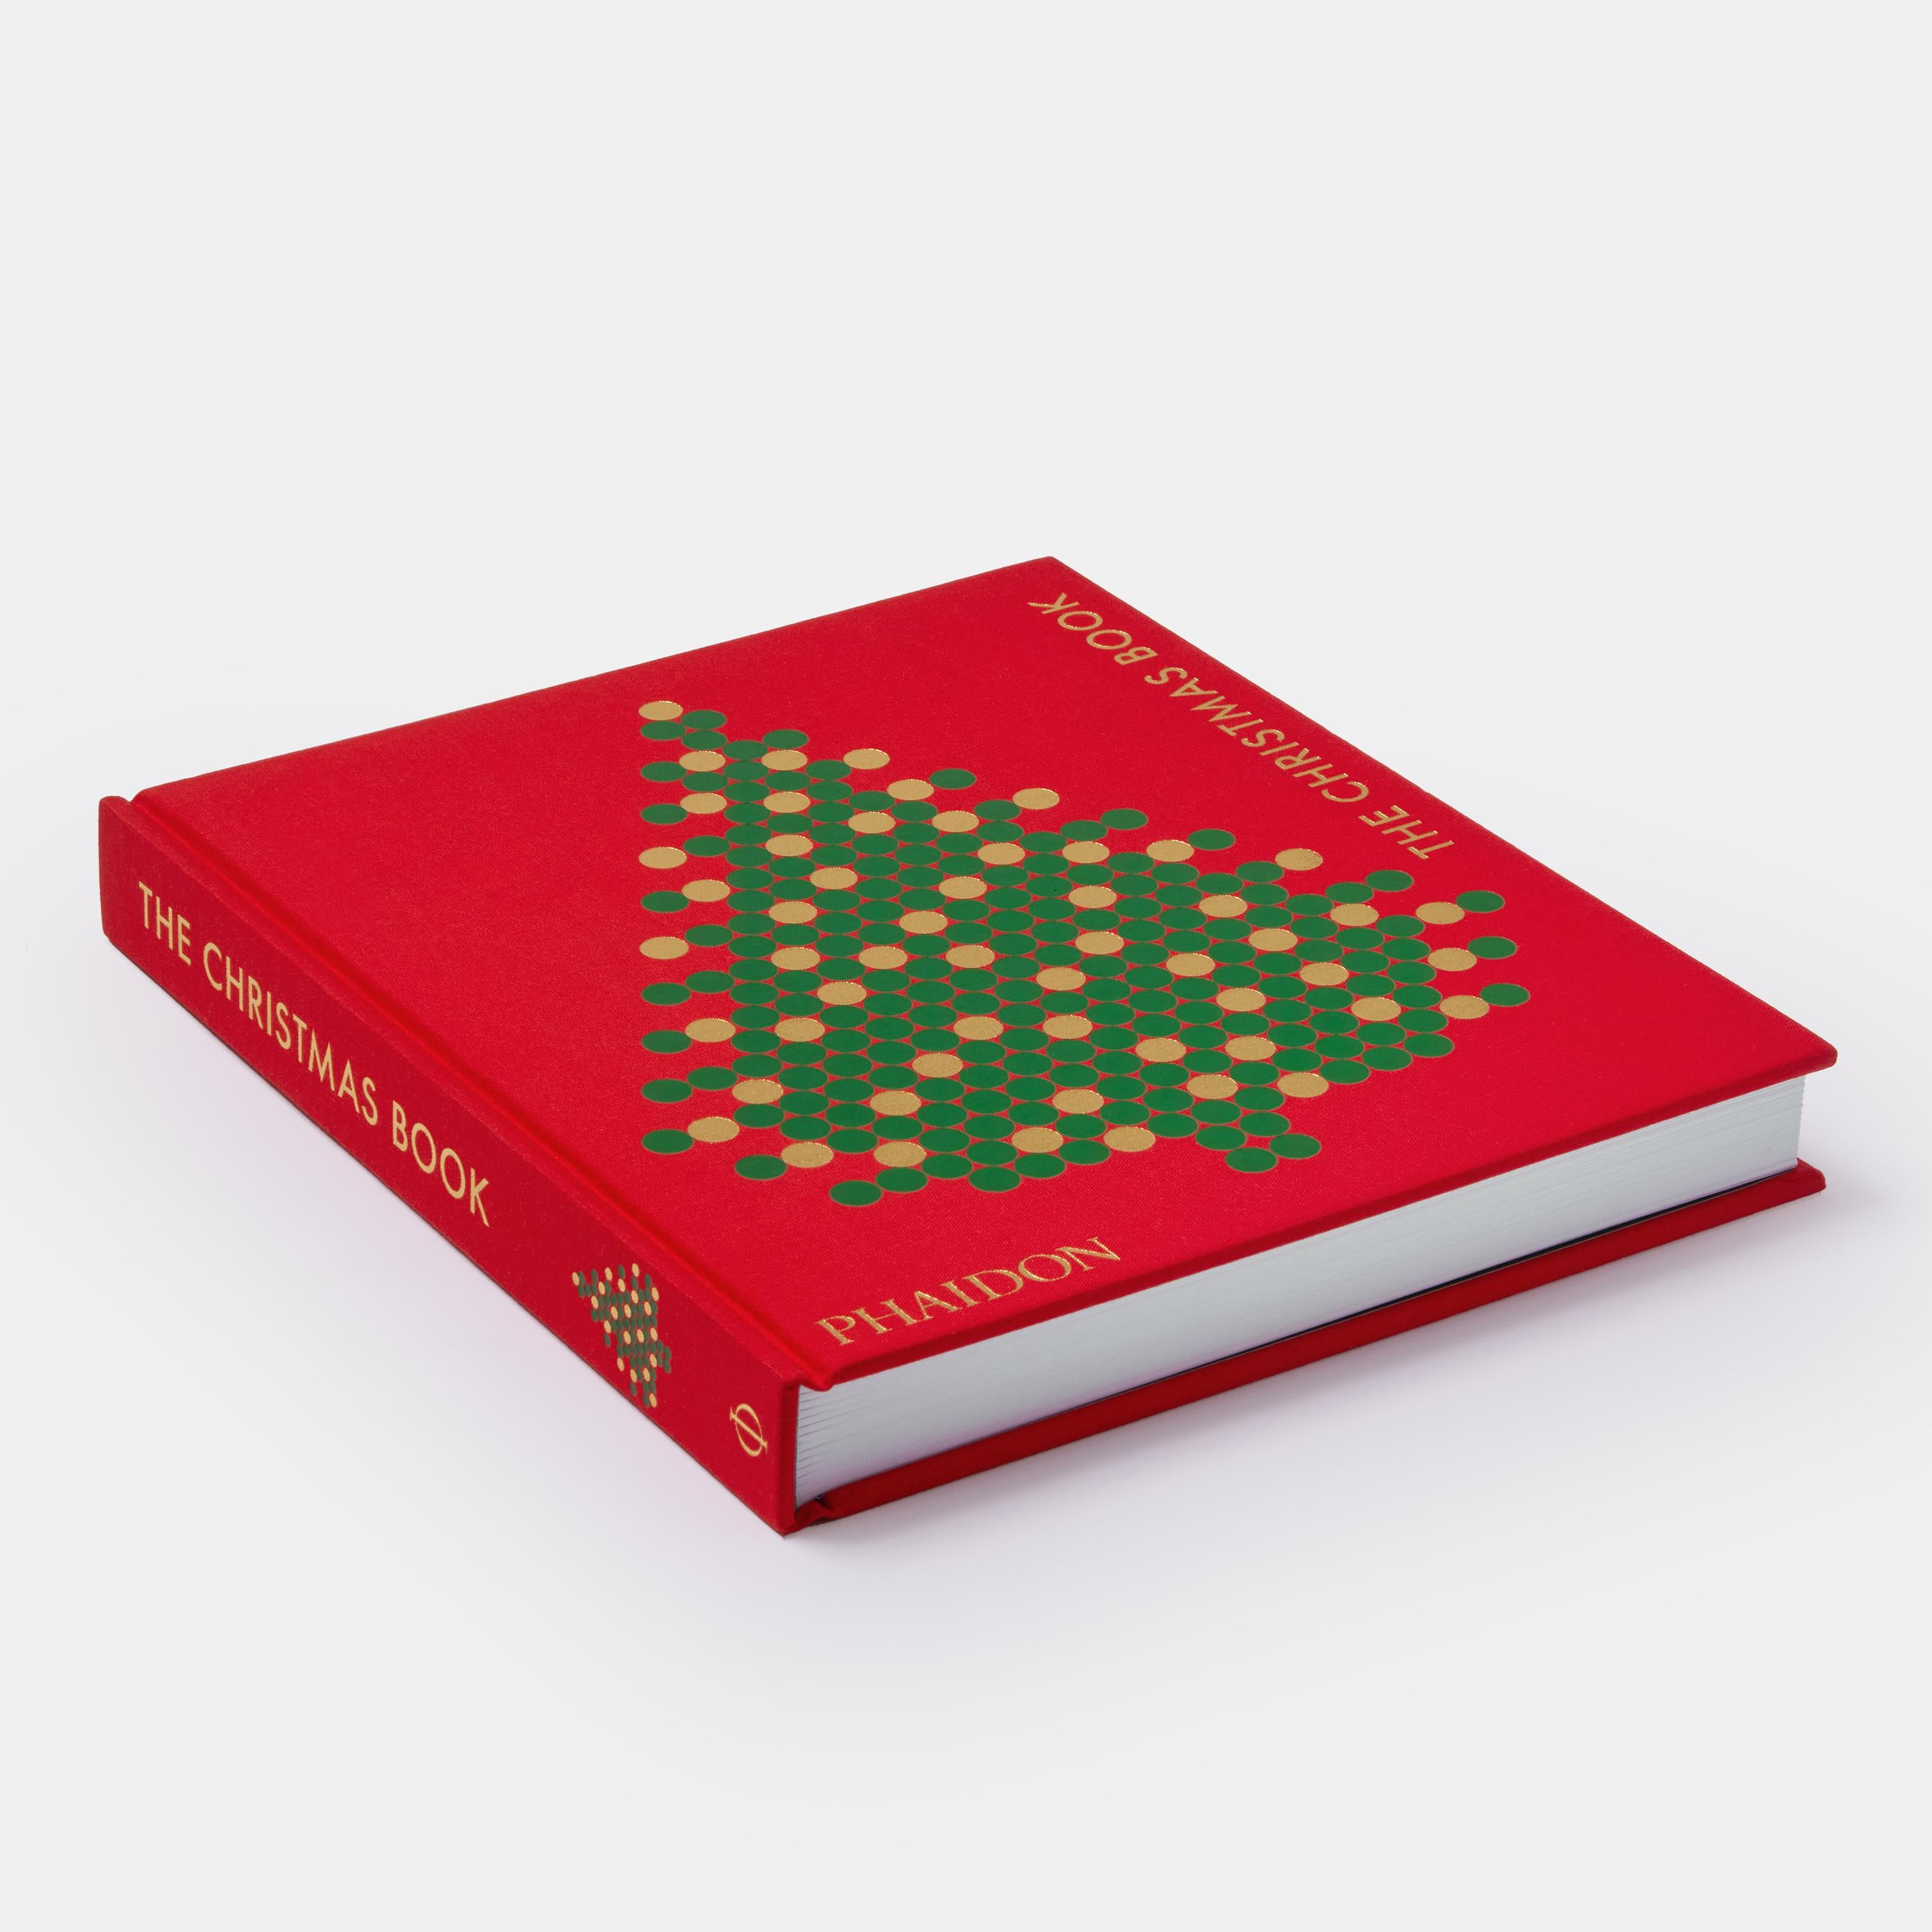 Ein visuelles Fest des Weihnachtsfestes, von den religiösen Anfängen bis hin zu den festlichen kulturellen Berührungspunkten - ein Buch zum Schätzen

Dieses Buch ist eine einzigartige und bahnbrechende visuelle Feier von Weihnachten, einem freudigen